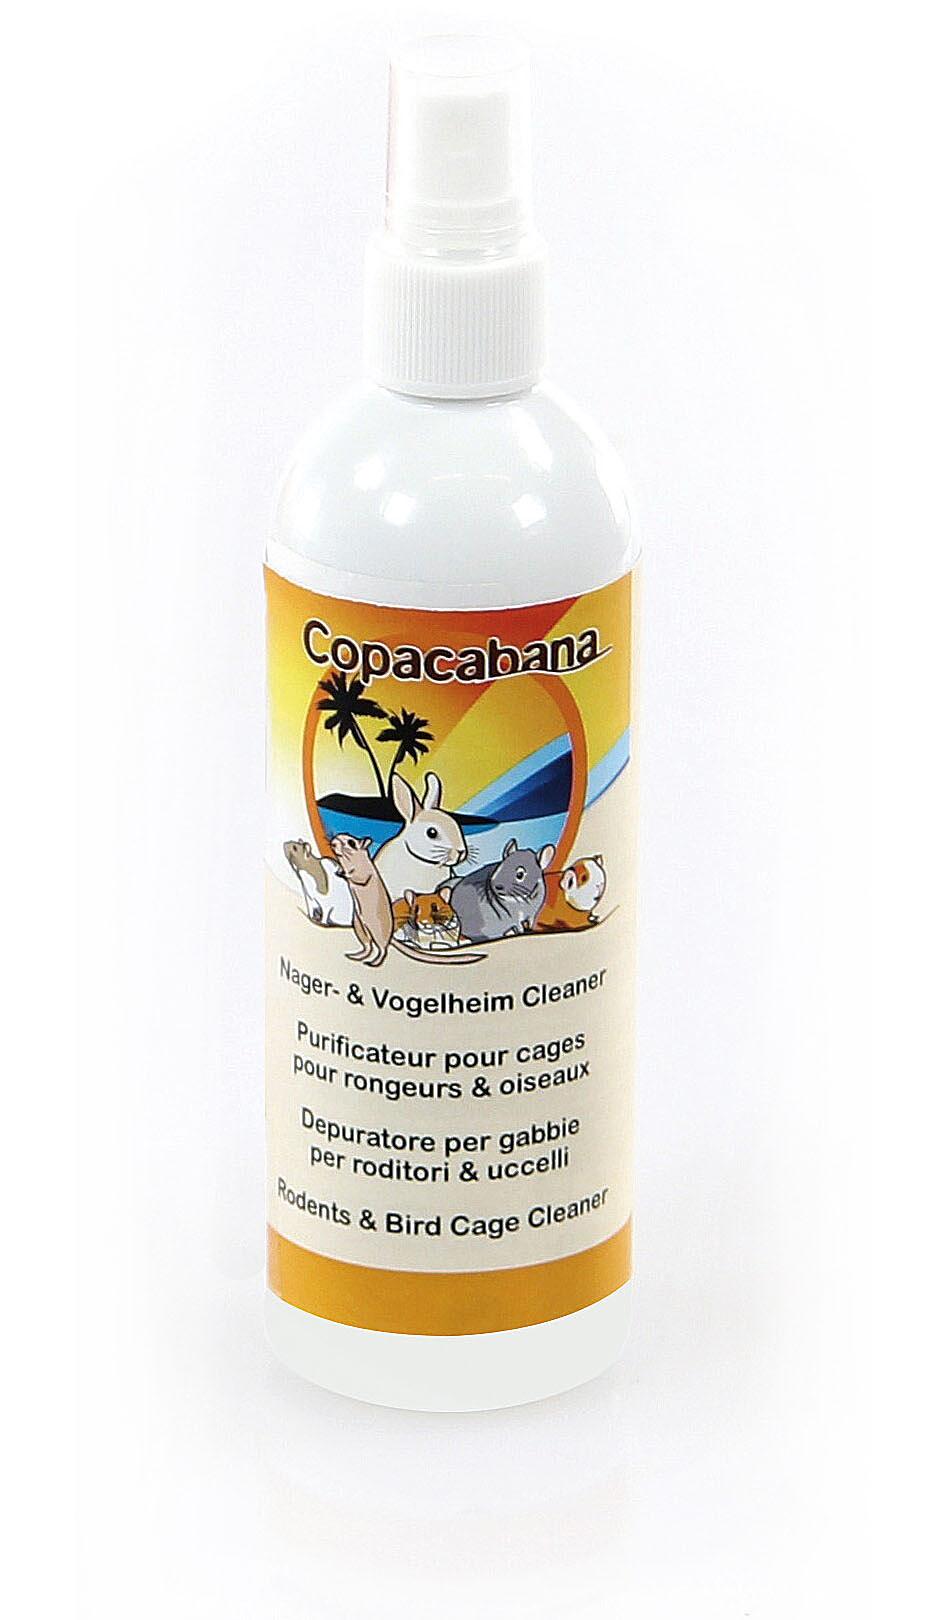 Copacabana Purificateur pour cages pour rongeurs & oiseaux Cleaner